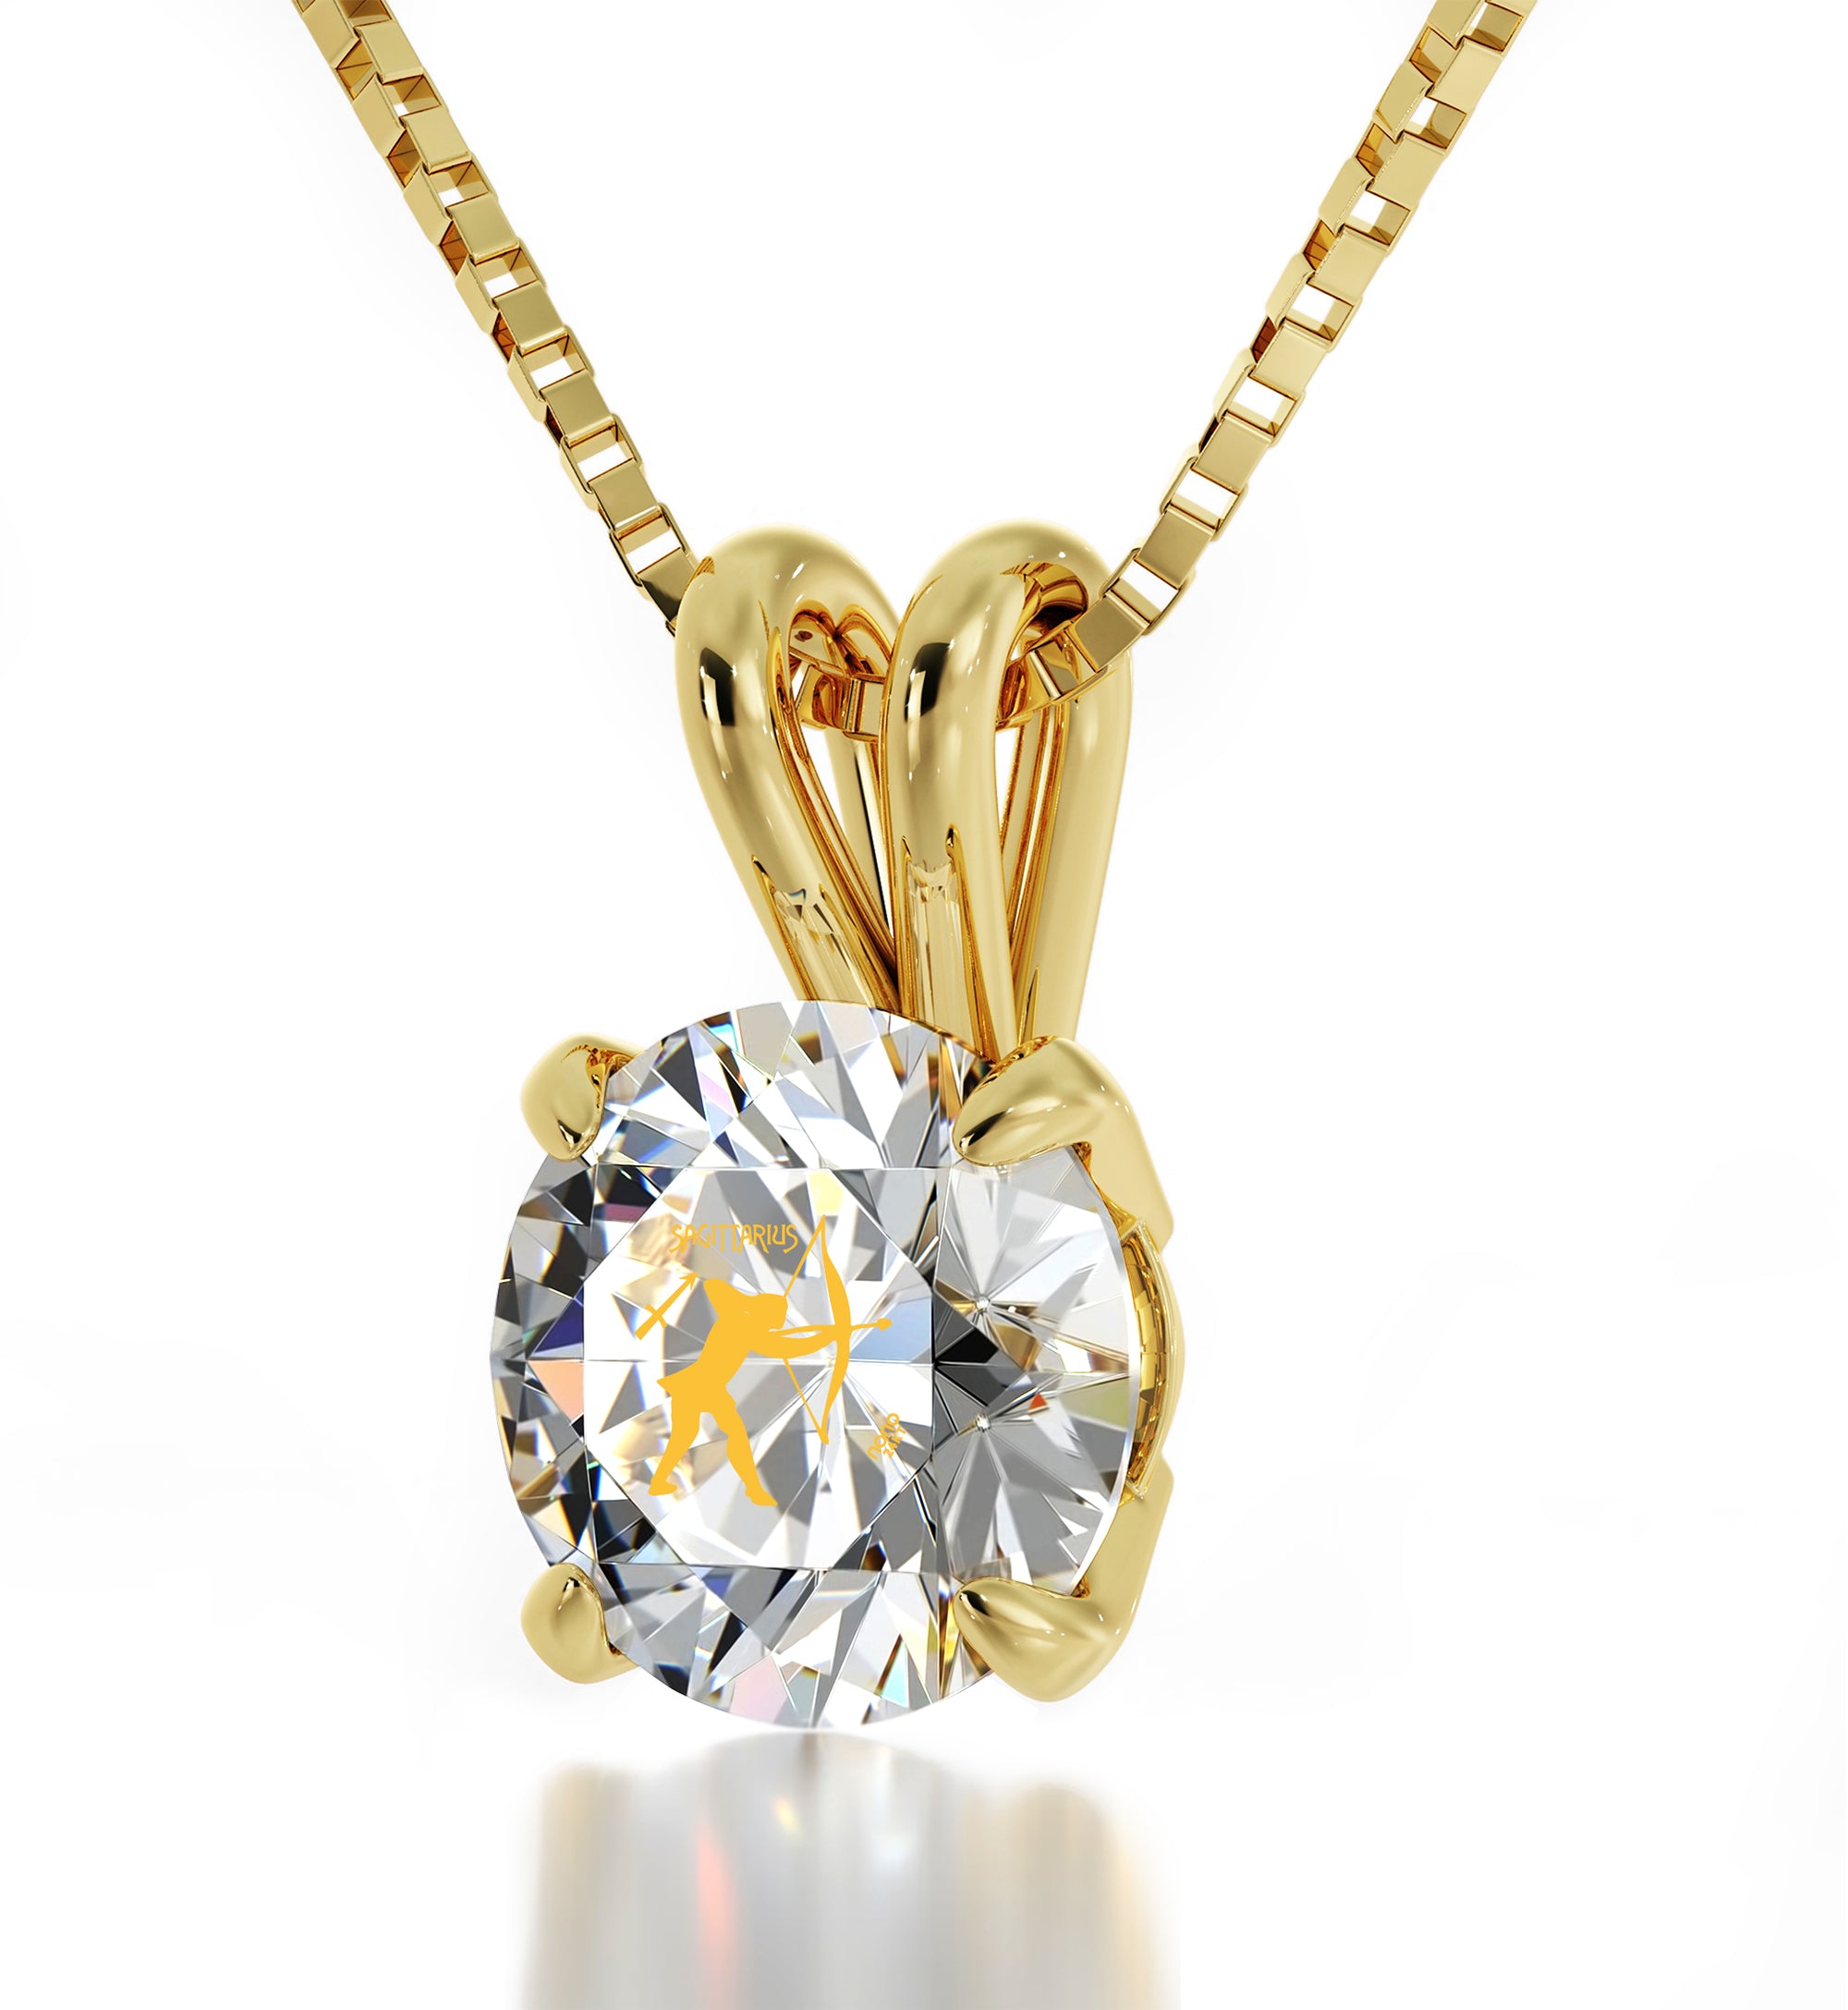 Zodiac Jewelry for Women | - Necklace gold 24k inscribed Sagittarius NanoStyle Jewelry